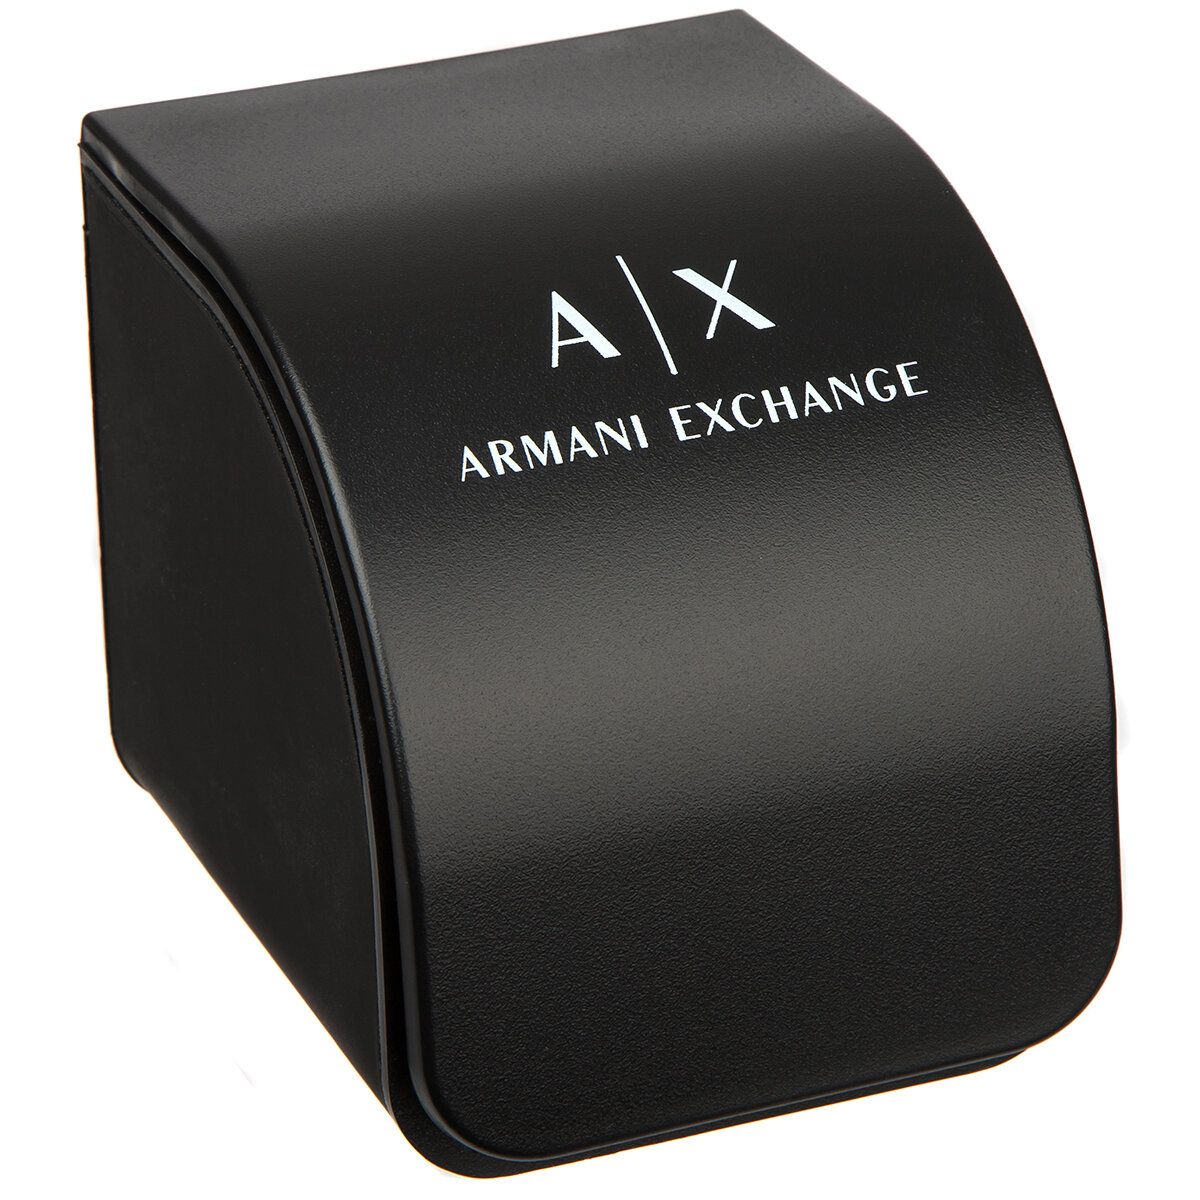 ARMANI EXCHANGE AX4331